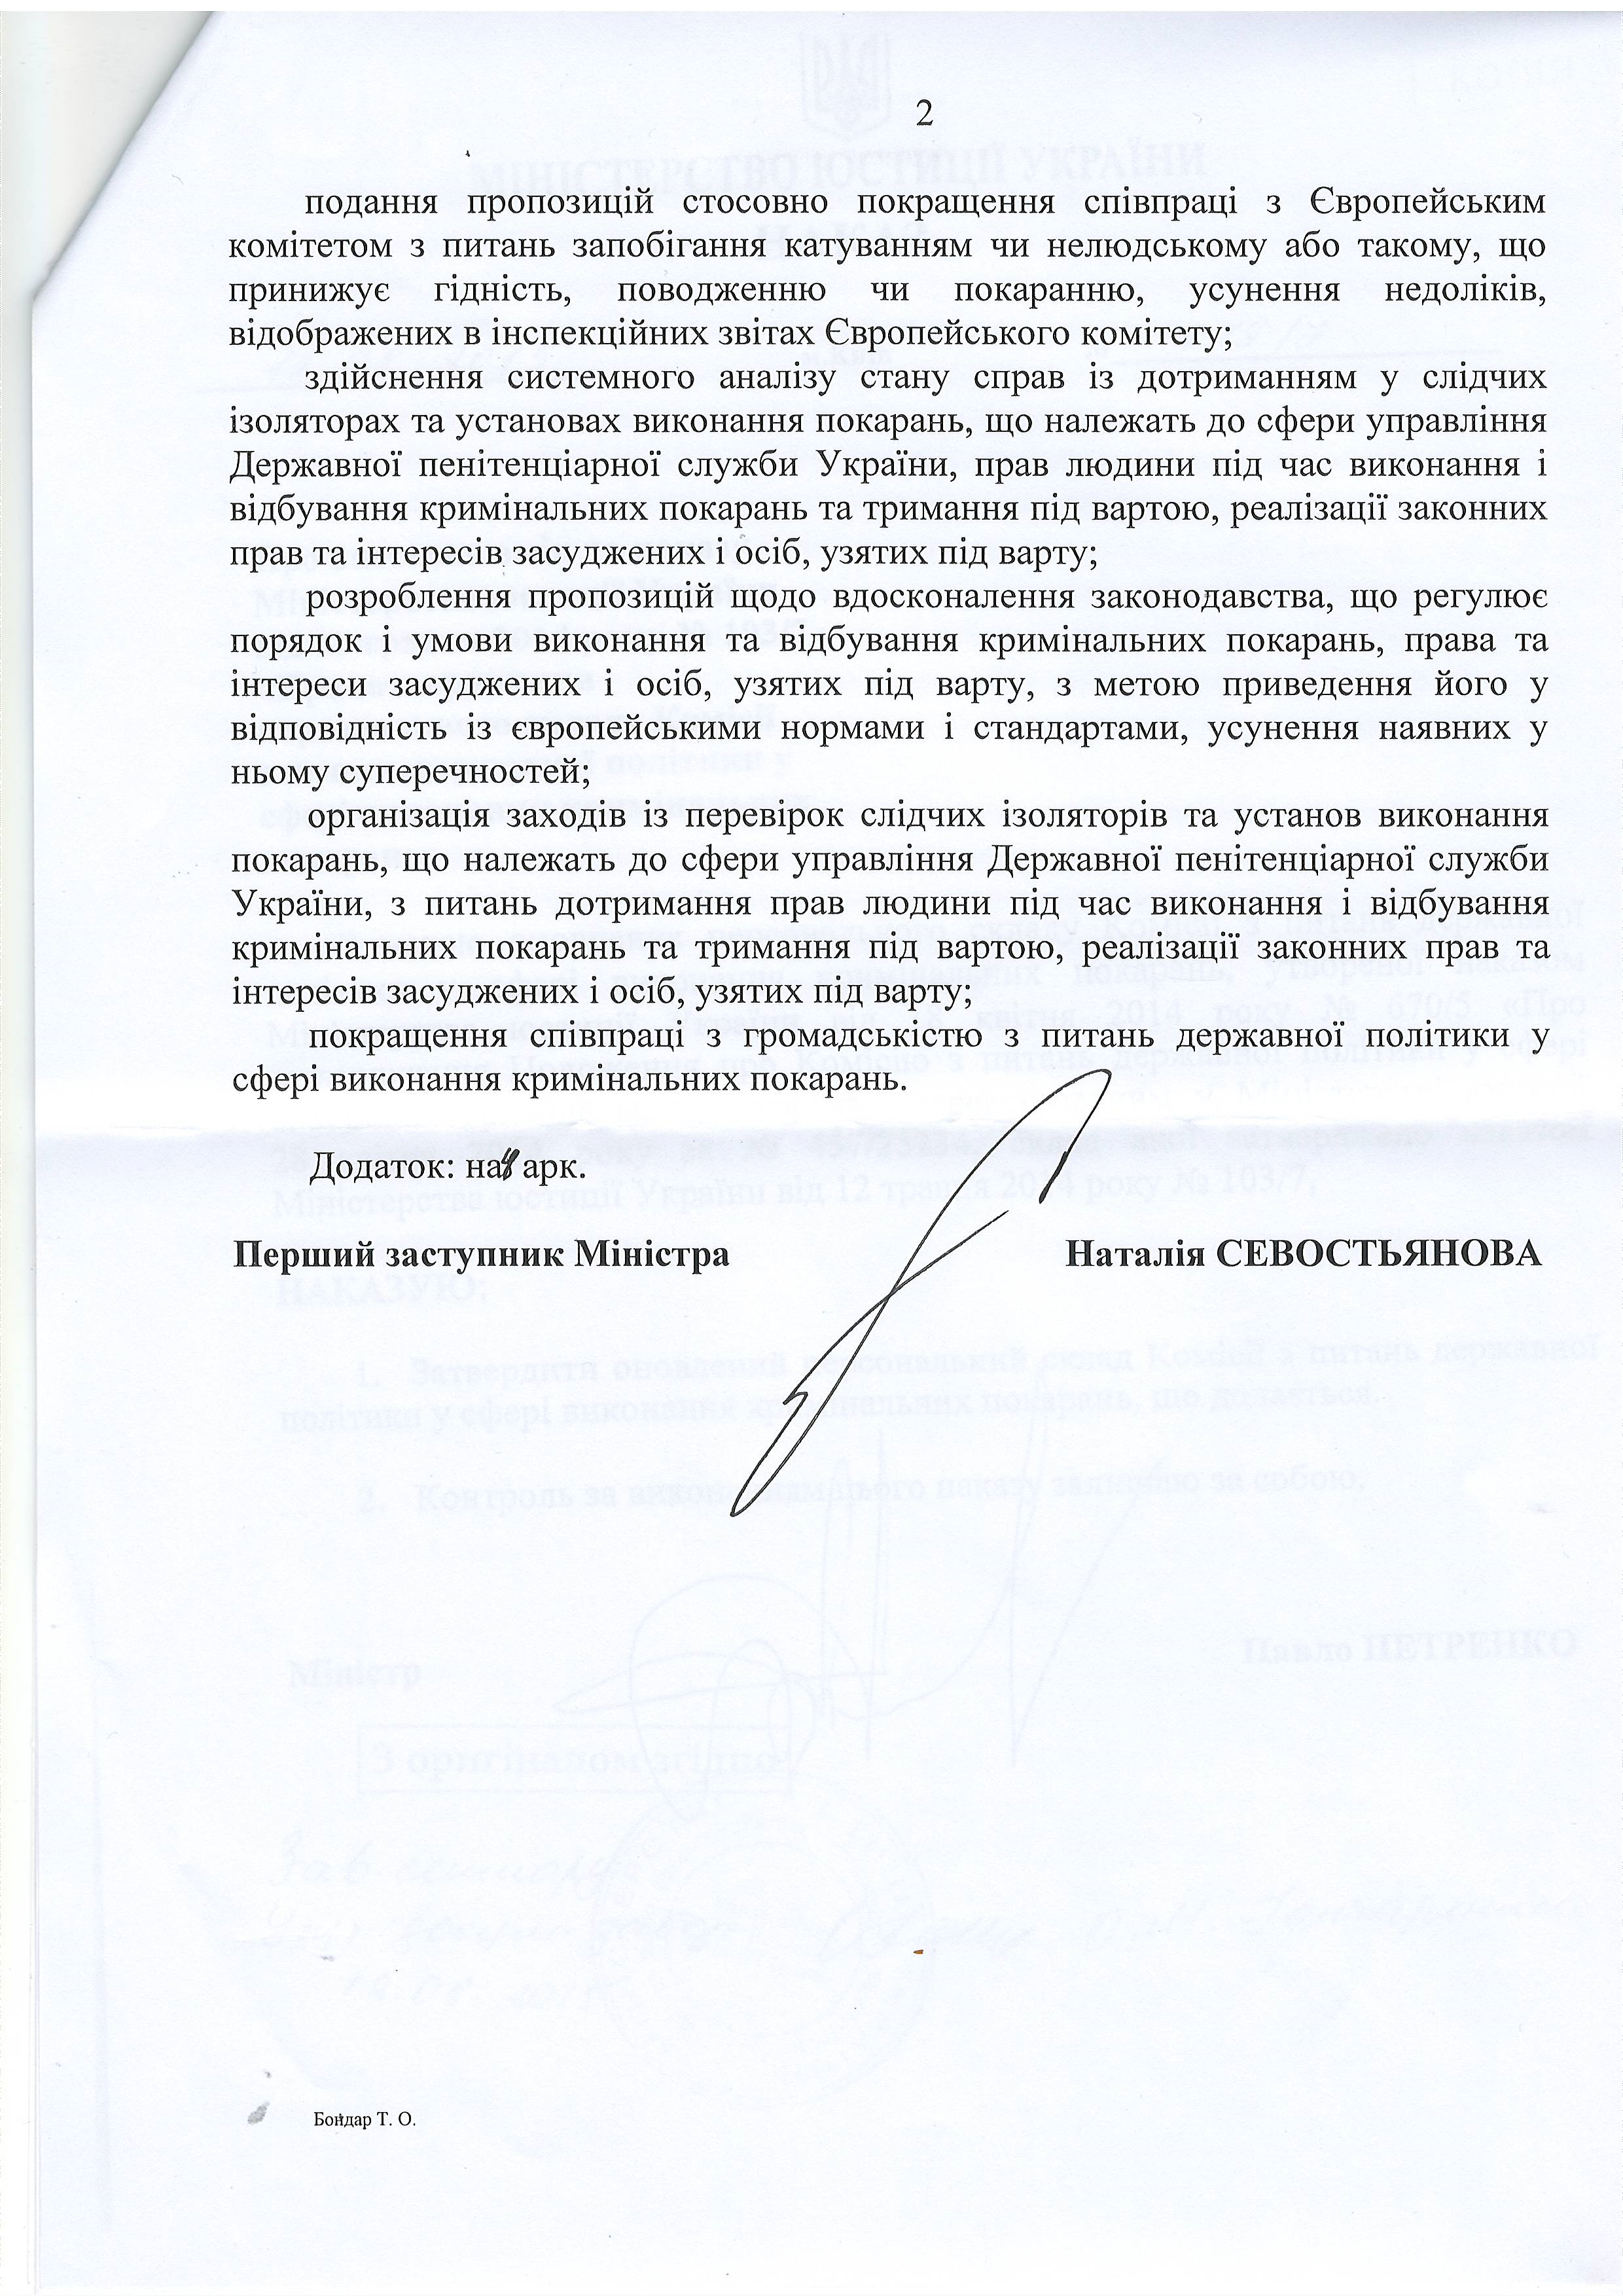 Лист Міністерства юстиції України від 21 вересня 2015 року